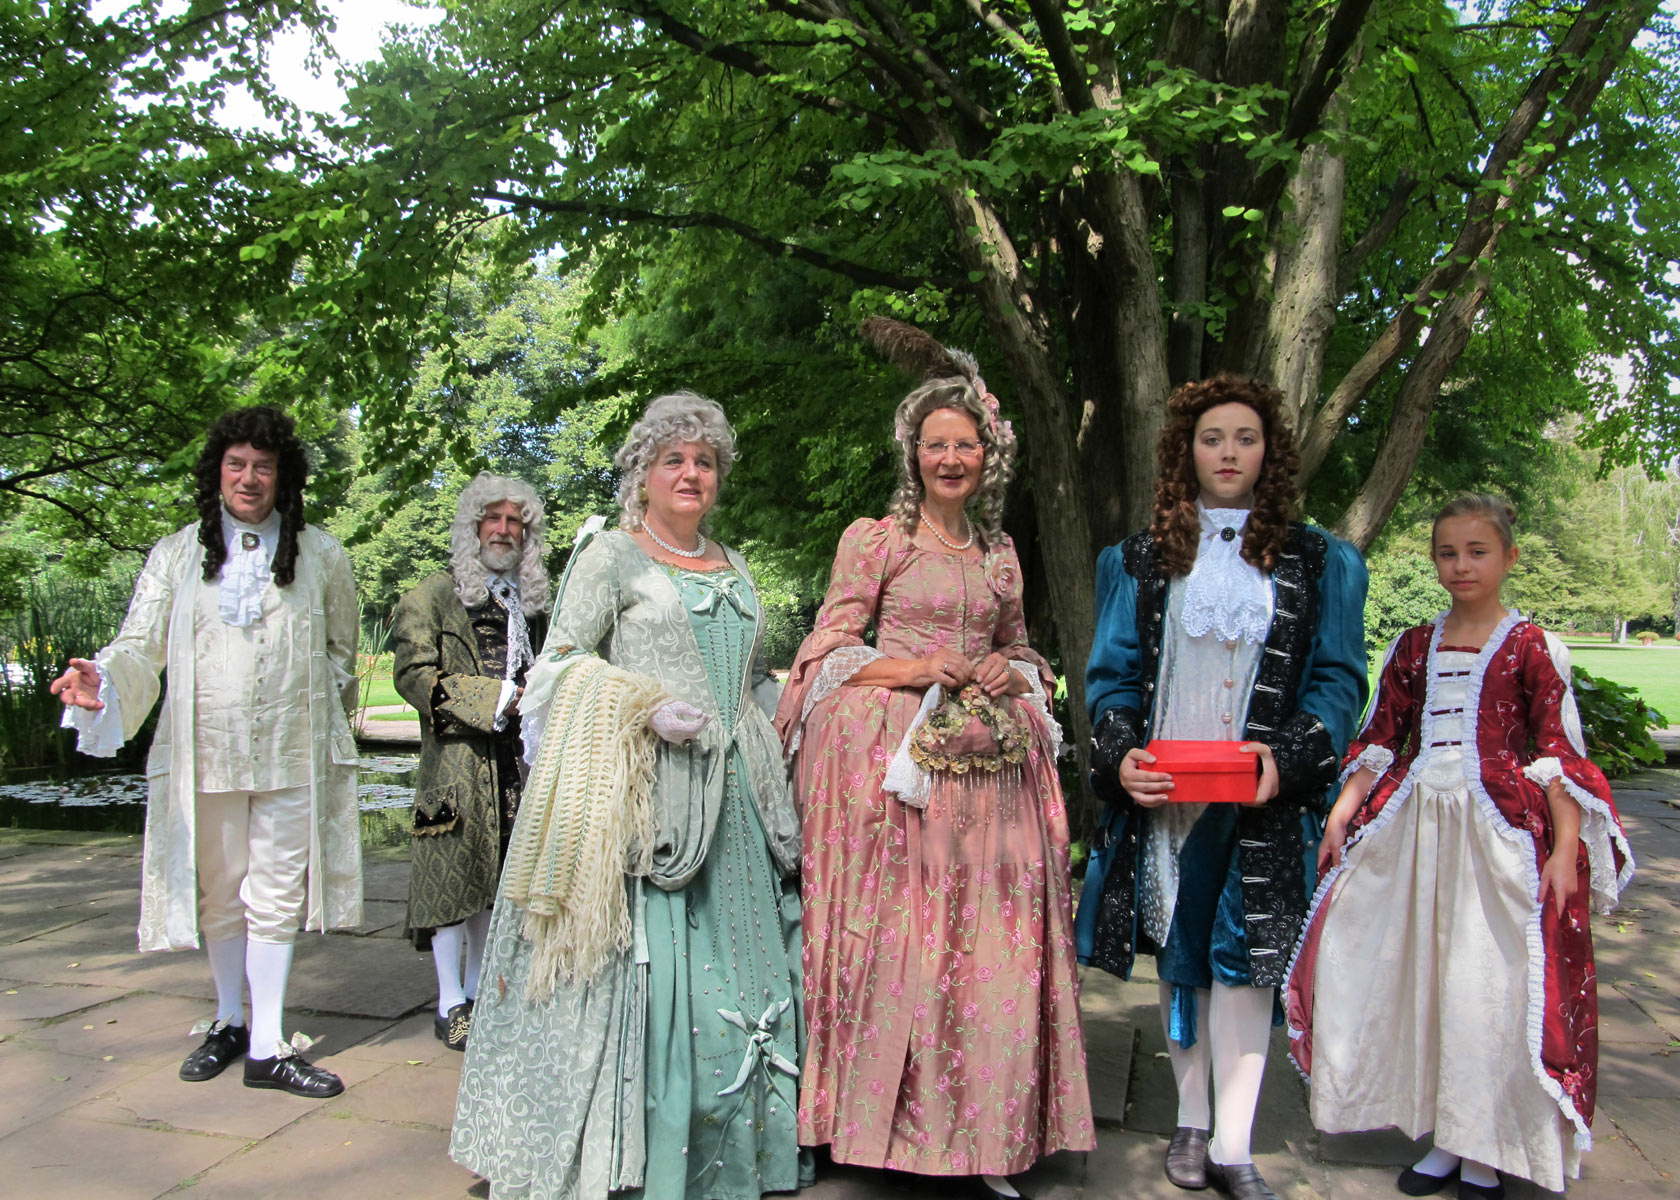 Gruppe mit historischen Kostümen, Barock